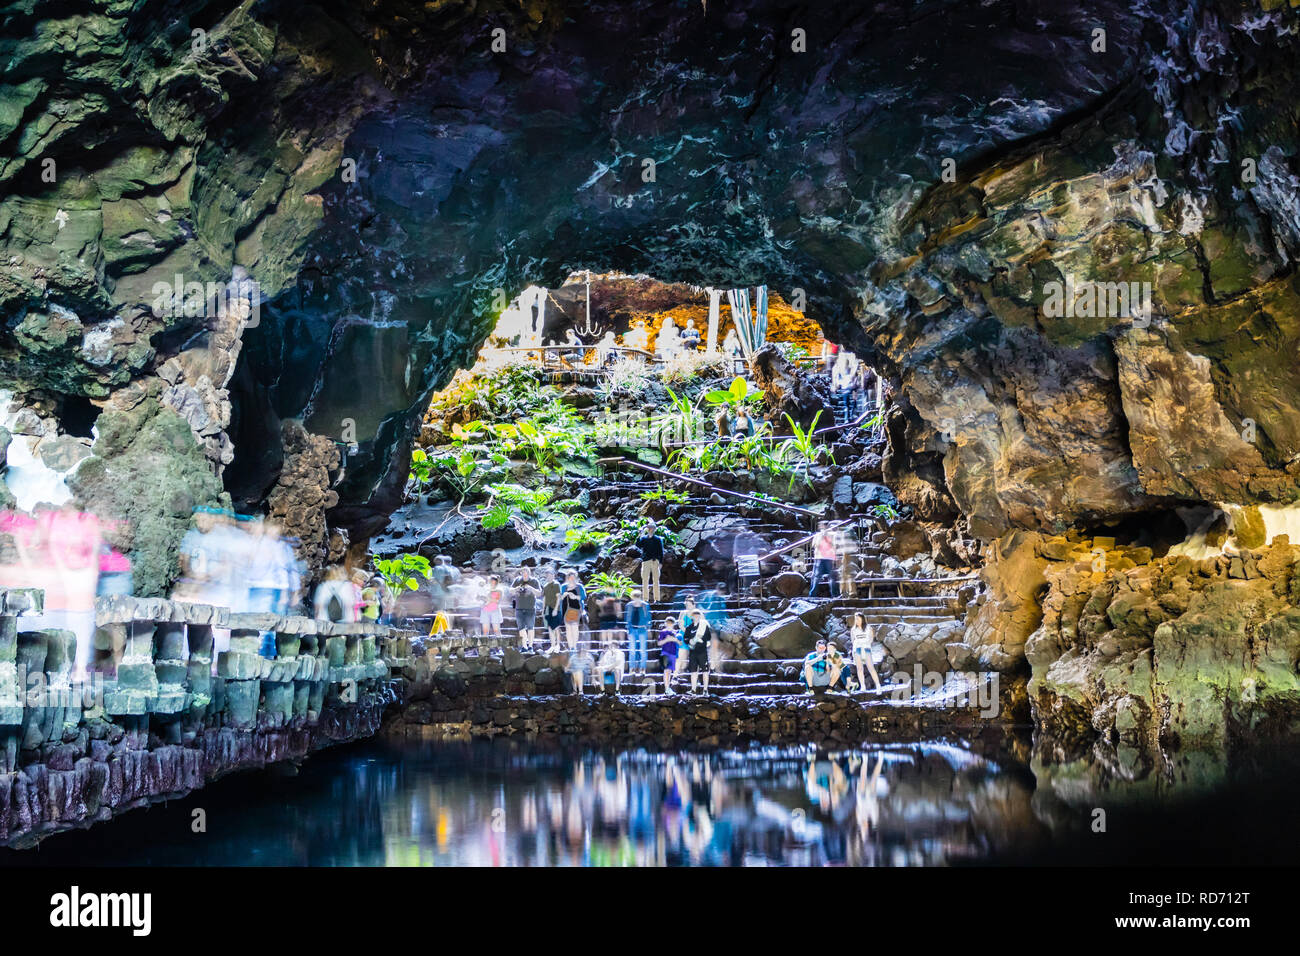 Jameos del Agua lava caves, located in Haría in northern Lanzarote, Canary Islands, Las palmas, Spain. Stock Photo